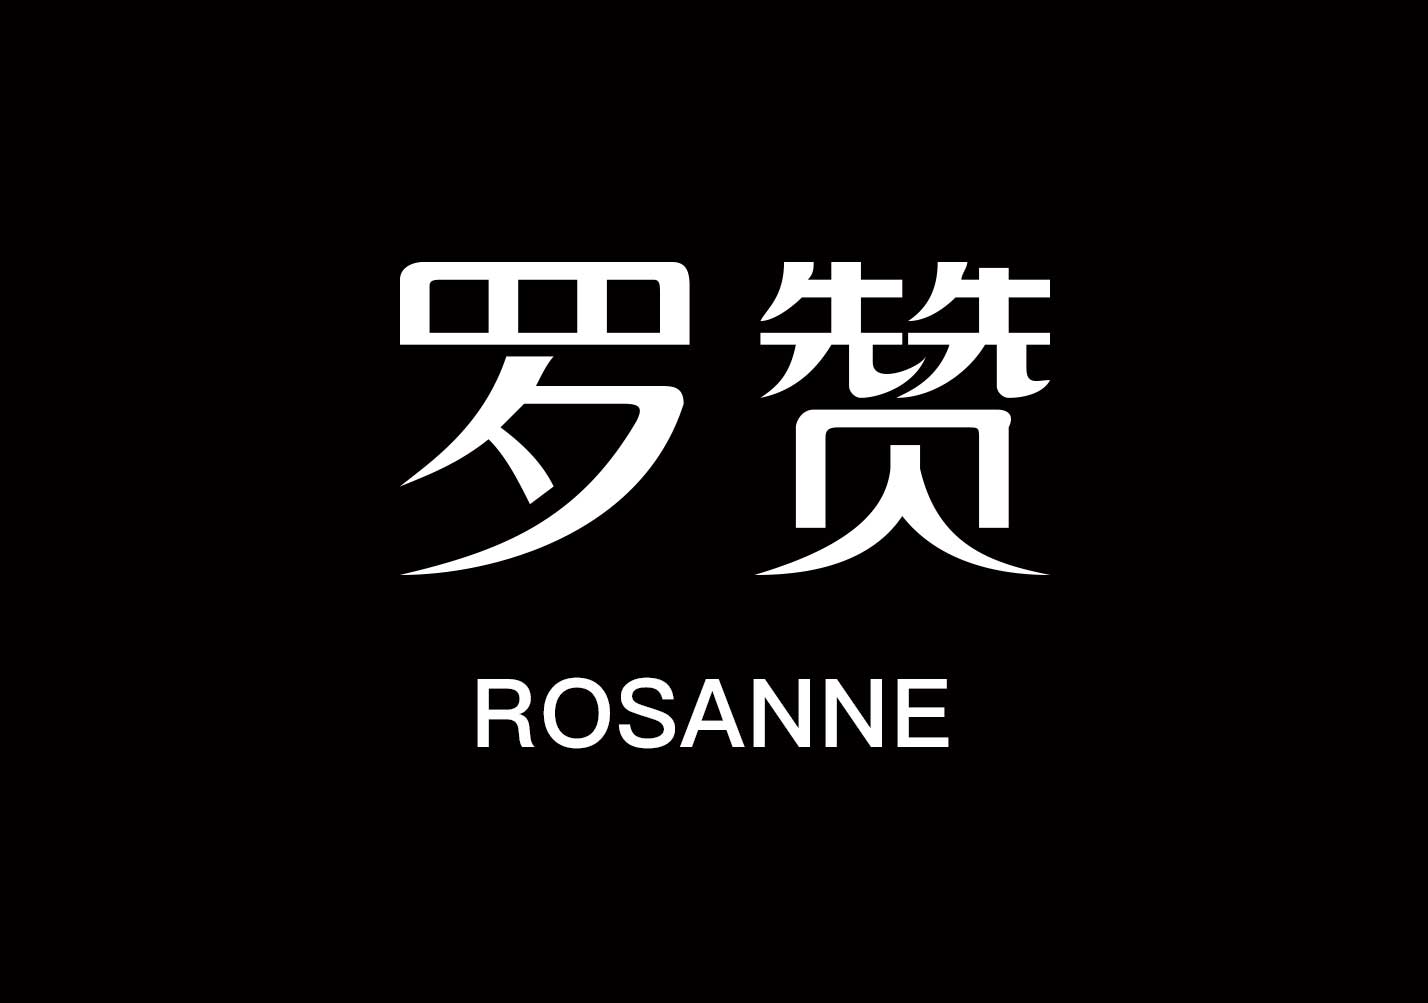 罗赞-服装公司品牌取名